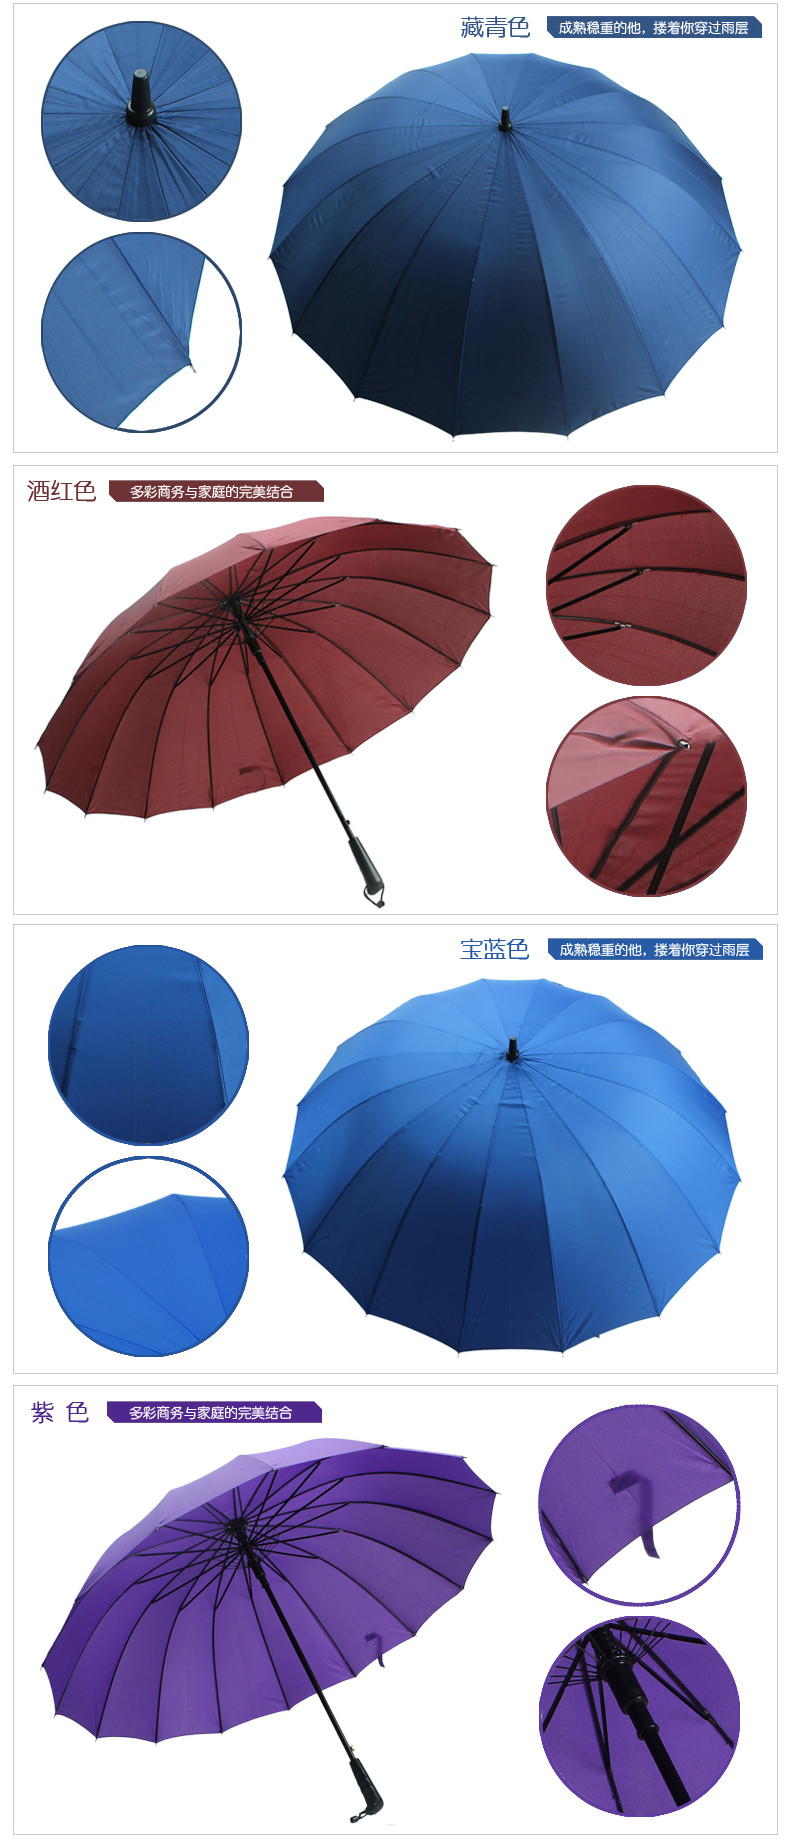 【长沙湘宁源】 十六骨雨伞